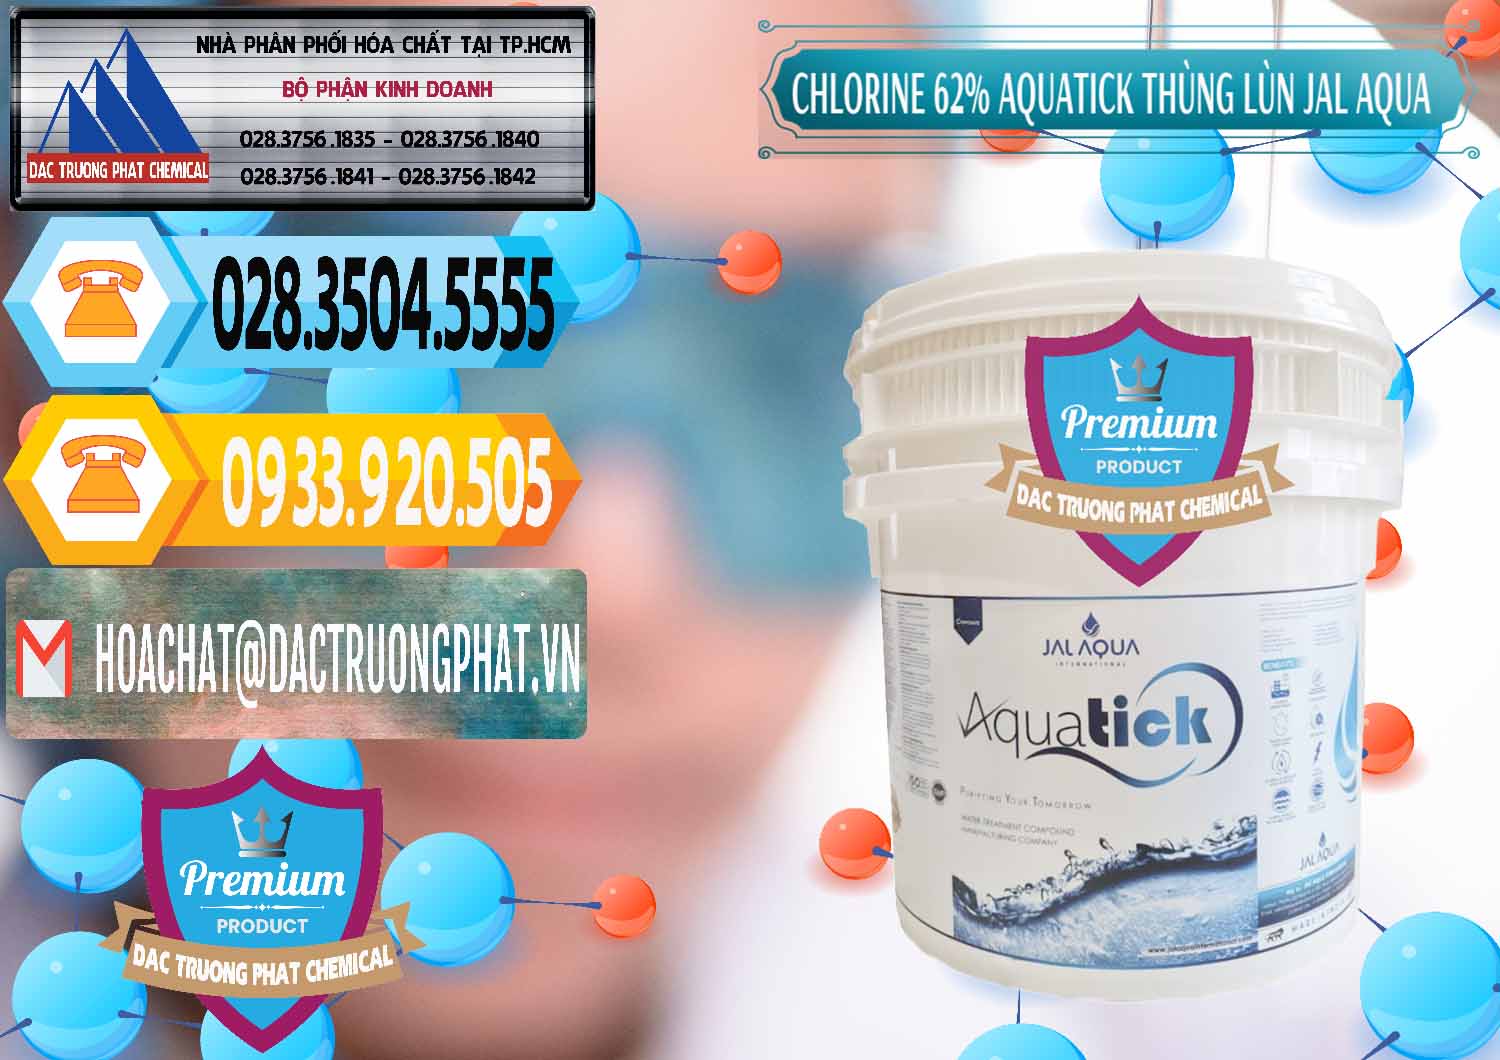 Cty phân phối ( bán ) Chlorine – Clorin 62% Aquatick Thùng Lùn Jal Aqua Ấn Độ India - 0238 - Nơi chuyên phân phối ( kinh doanh ) hóa chất tại TP.HCM - hoachattayrua.net